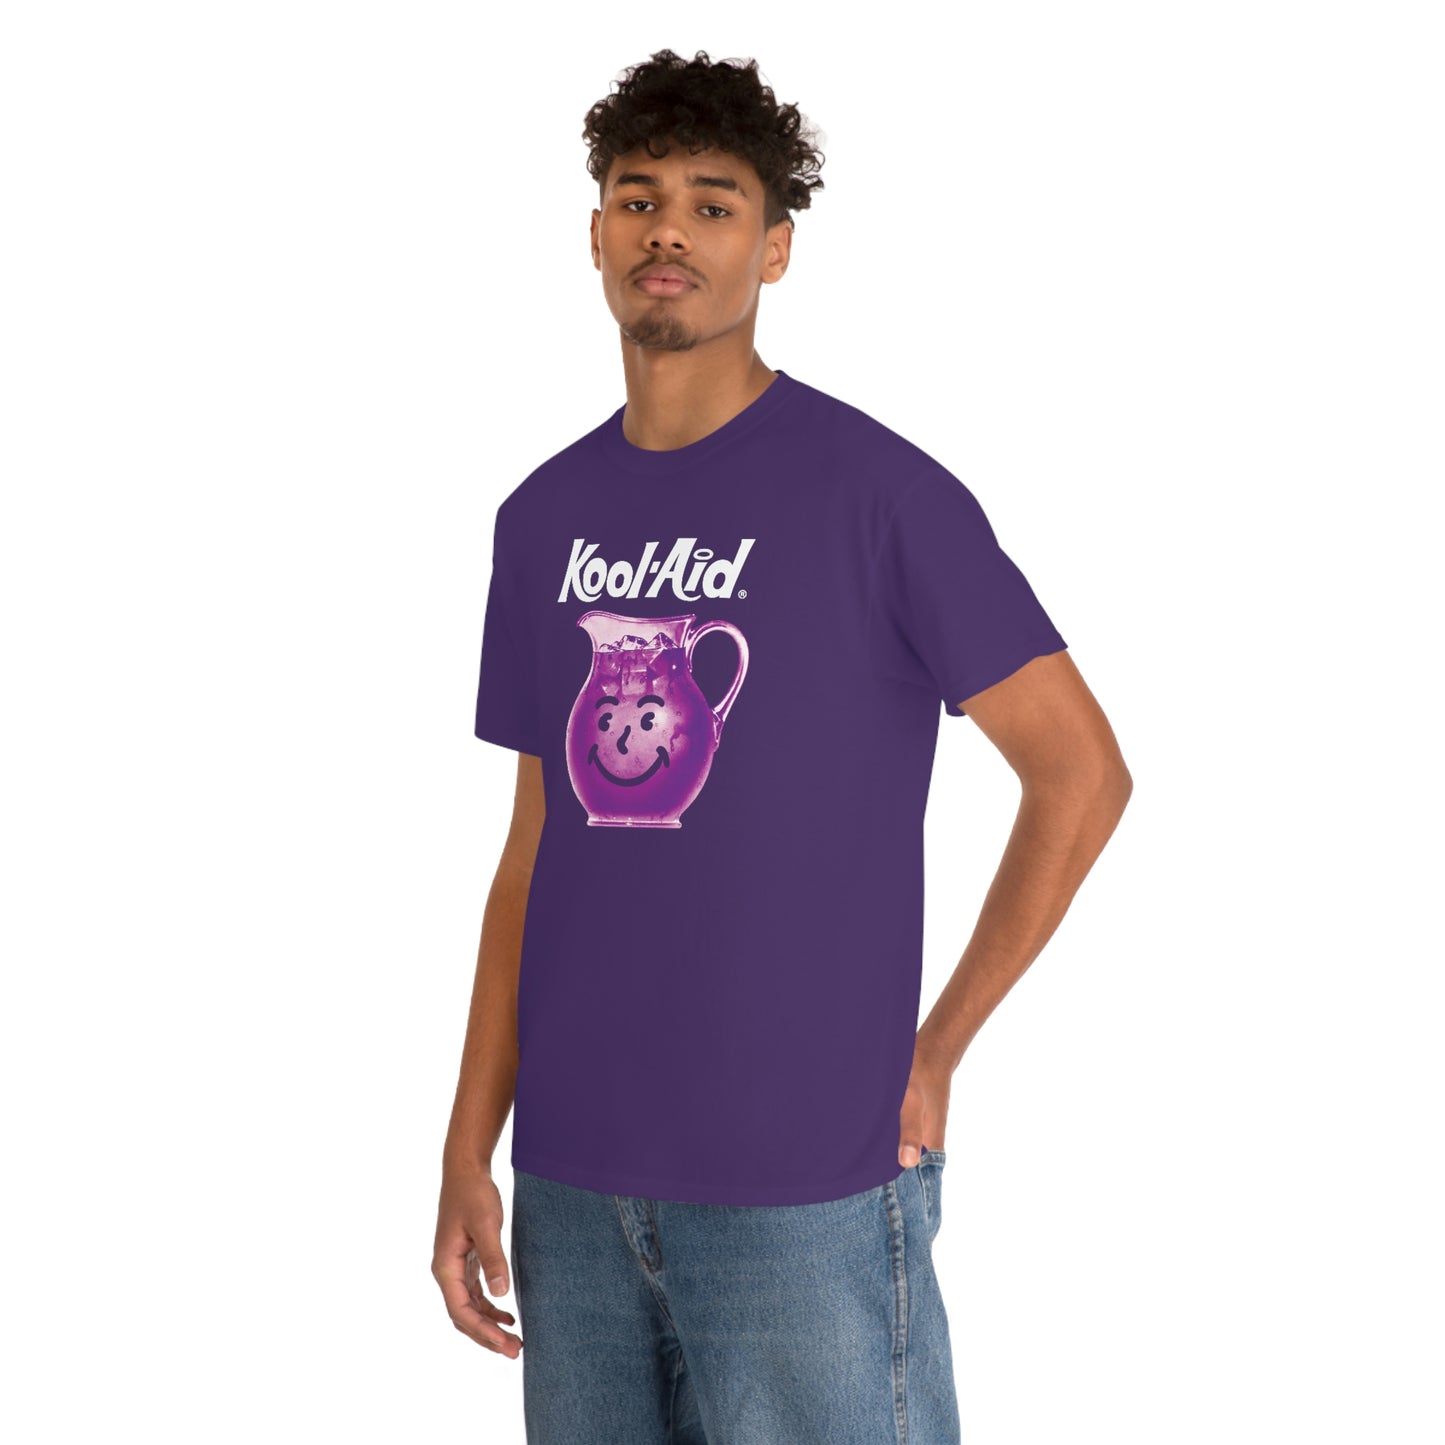 Koolaid T-Shirt